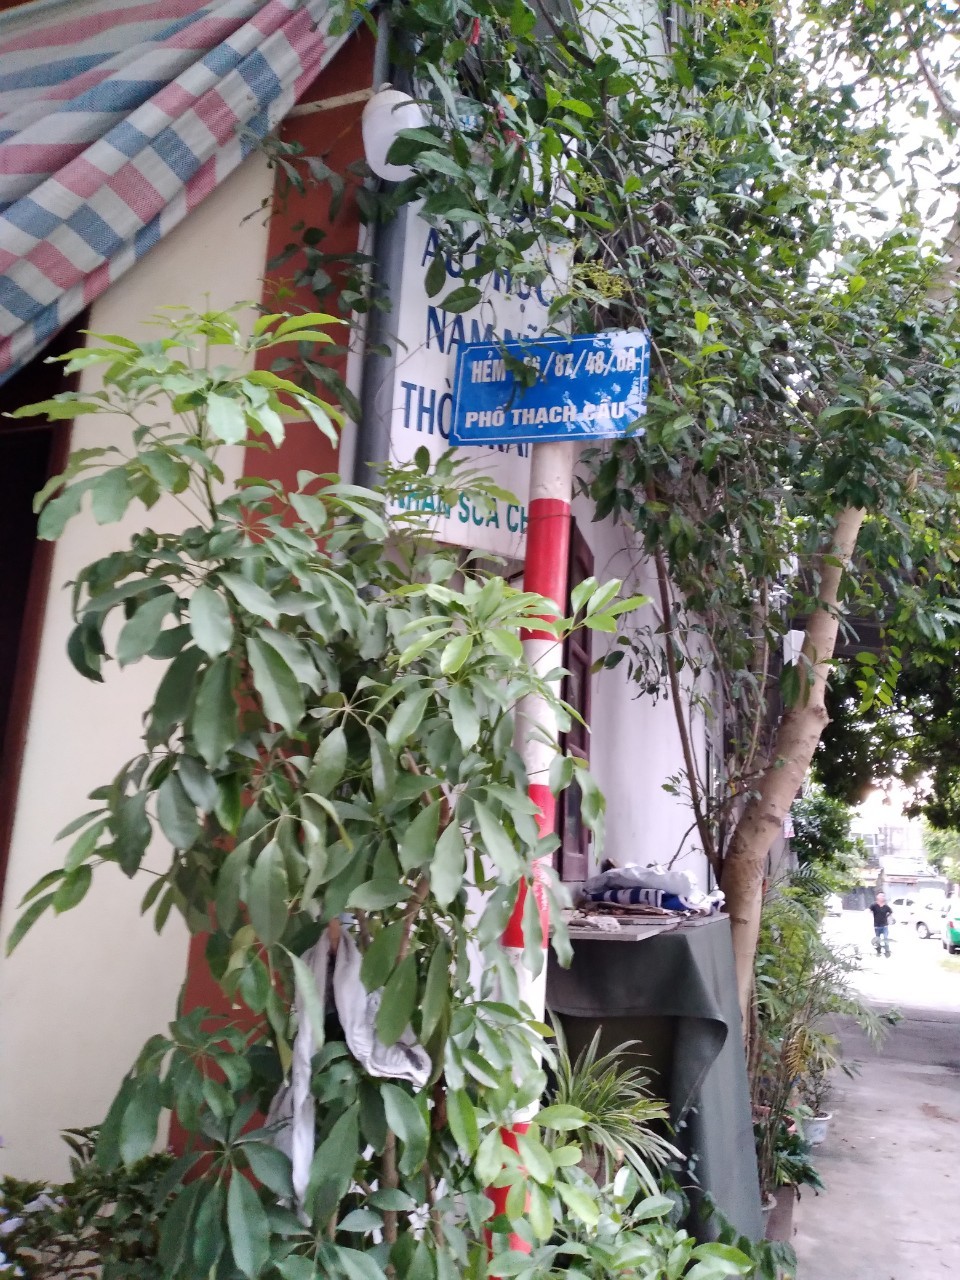 Chính chủ cho thuê nhà ở dài hạn tại địa chỉ: Ngõ 56/87 phố Thạch Cầu, Quận Long Biên, HN